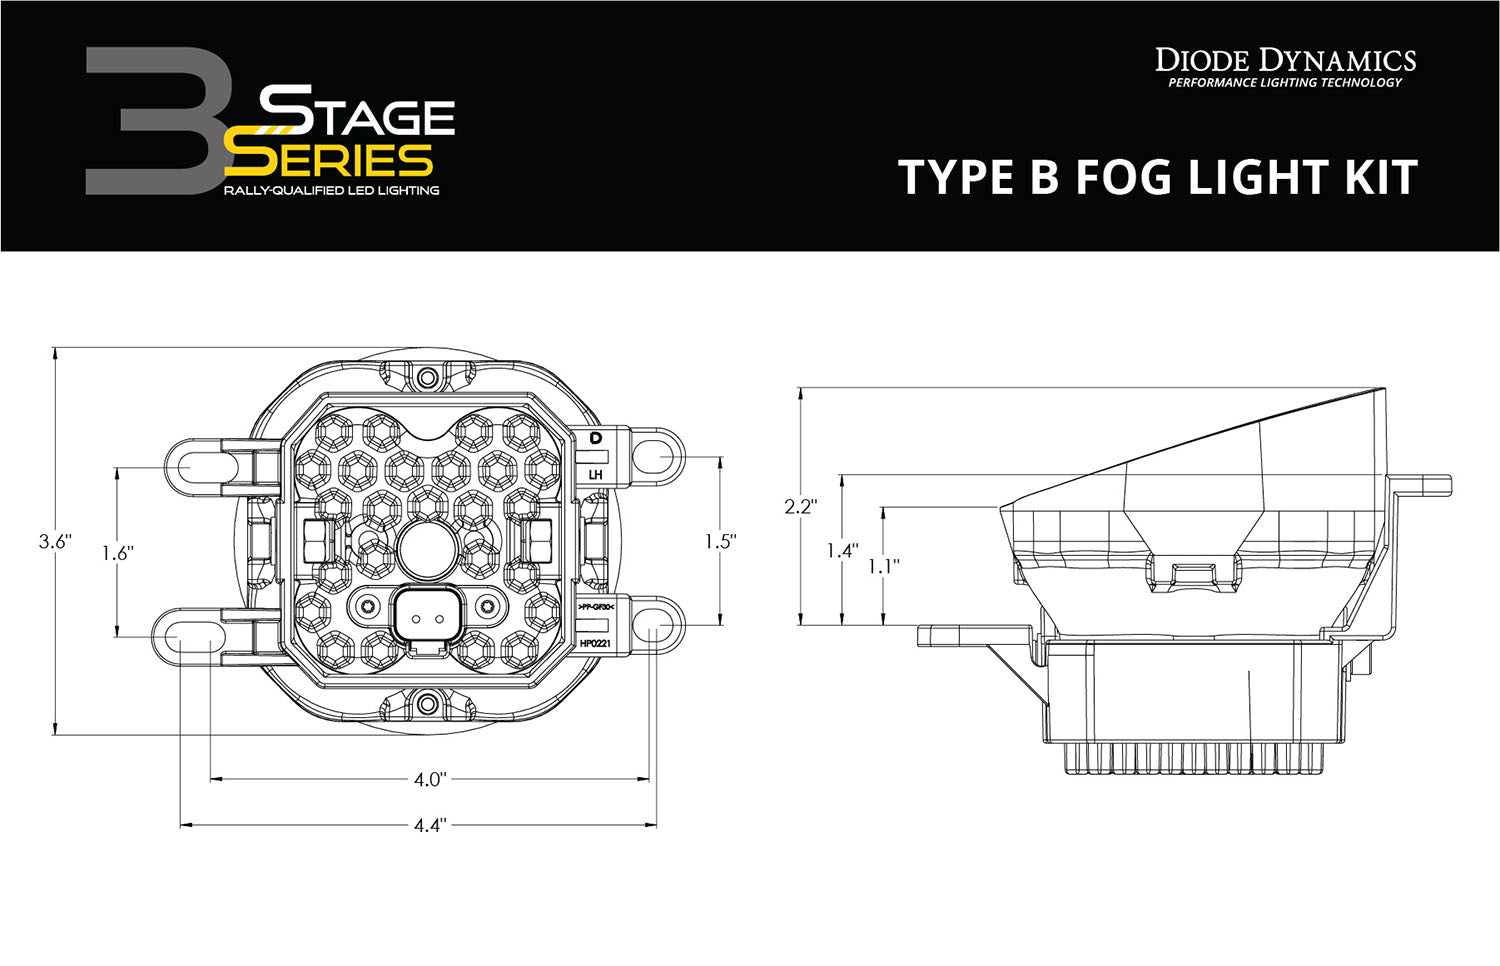 SS3 LED Fog Light Kit for 2007-2014 Toyota Camry Yellow SAE Fog Sport Diode Dynamics